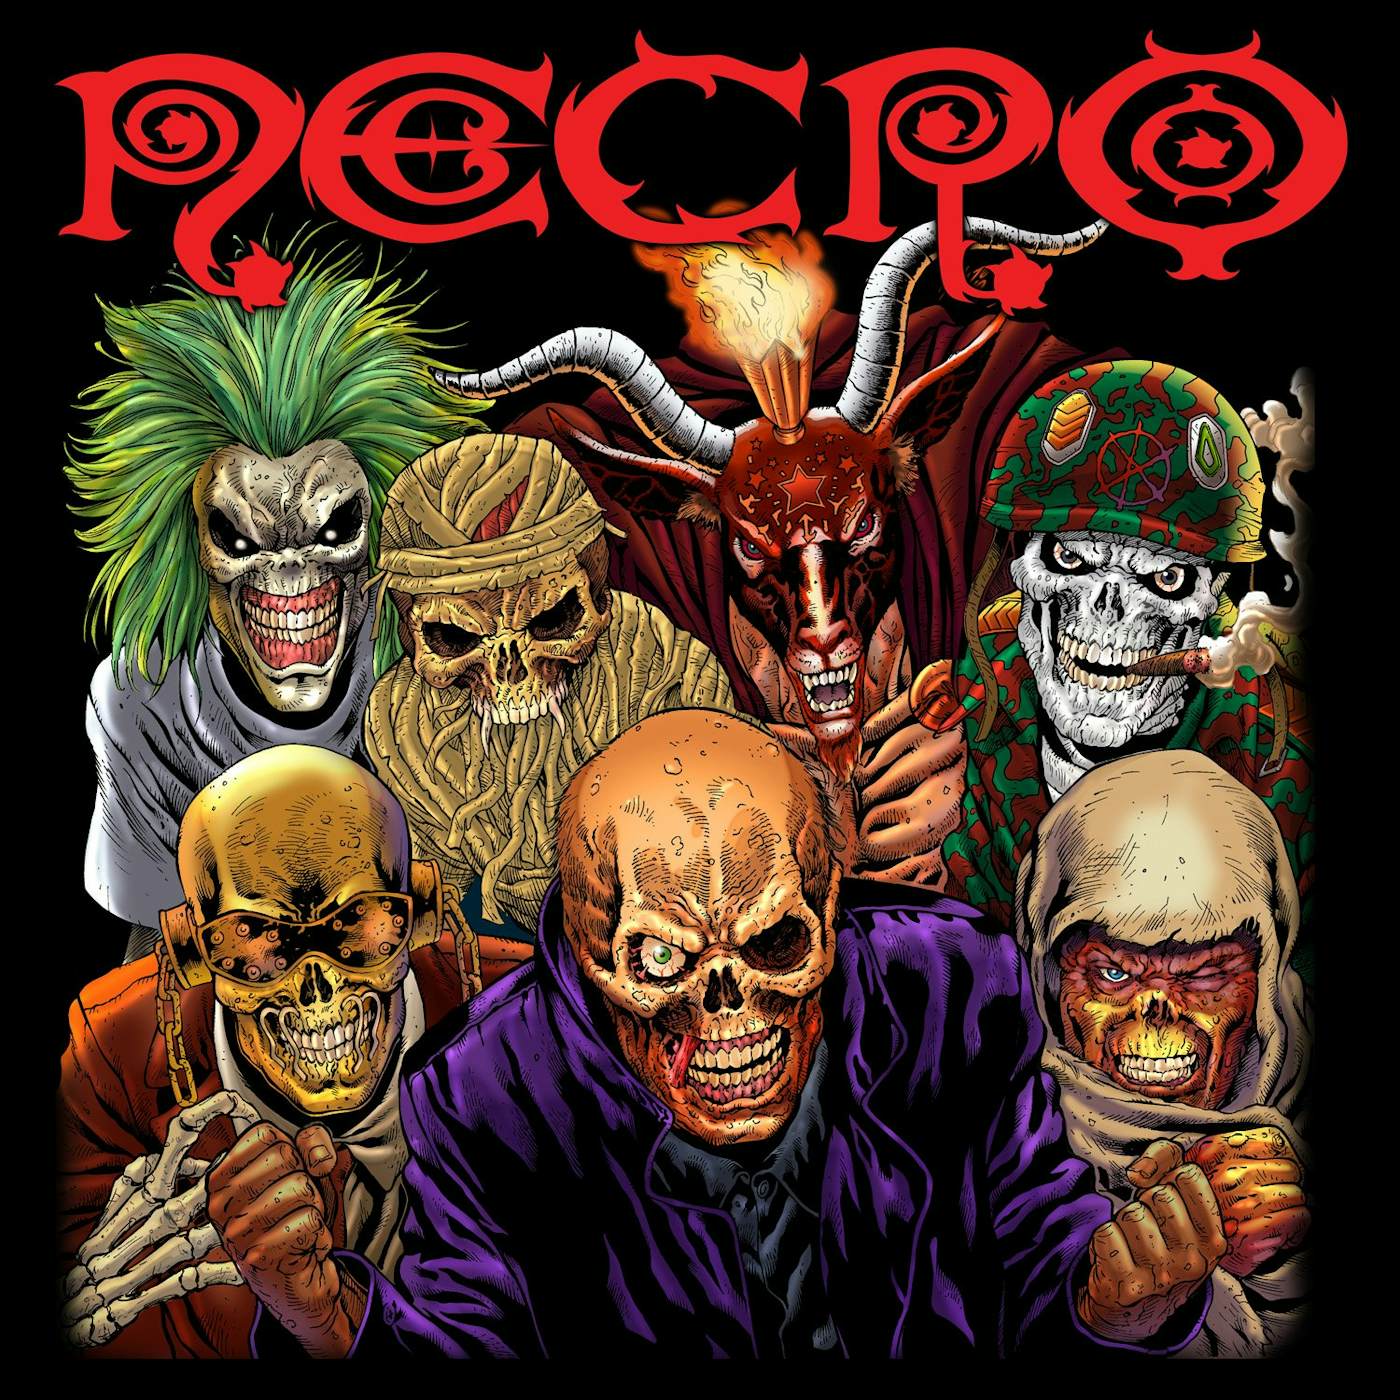 Necro "Metal Hiphop" T-Shirt